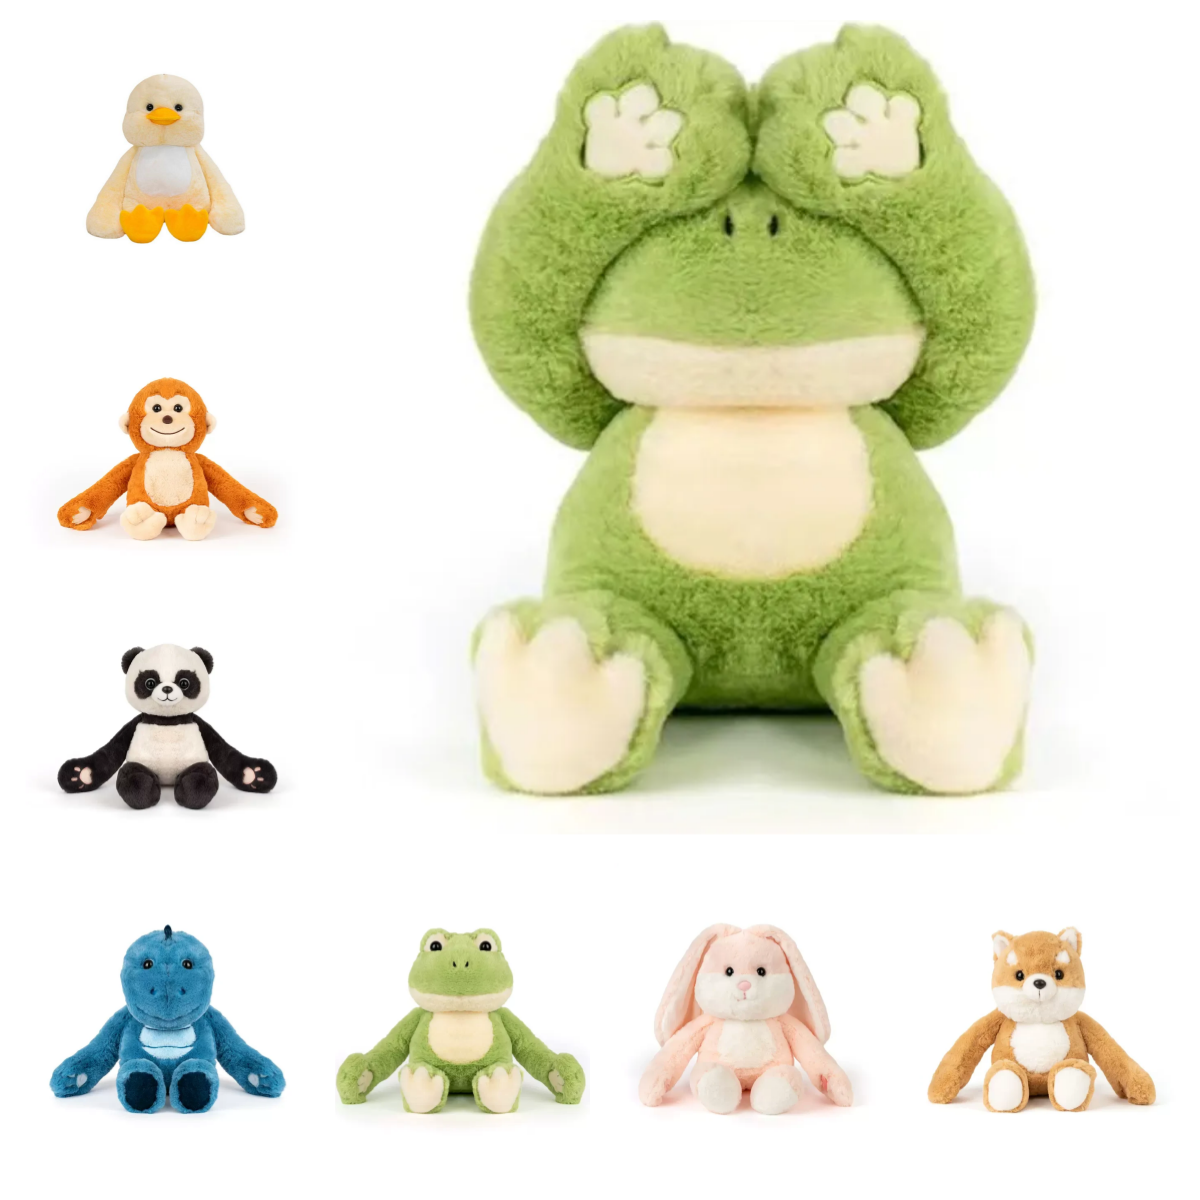 Peekaboo stuffed animal plush toy,15.74 Inches